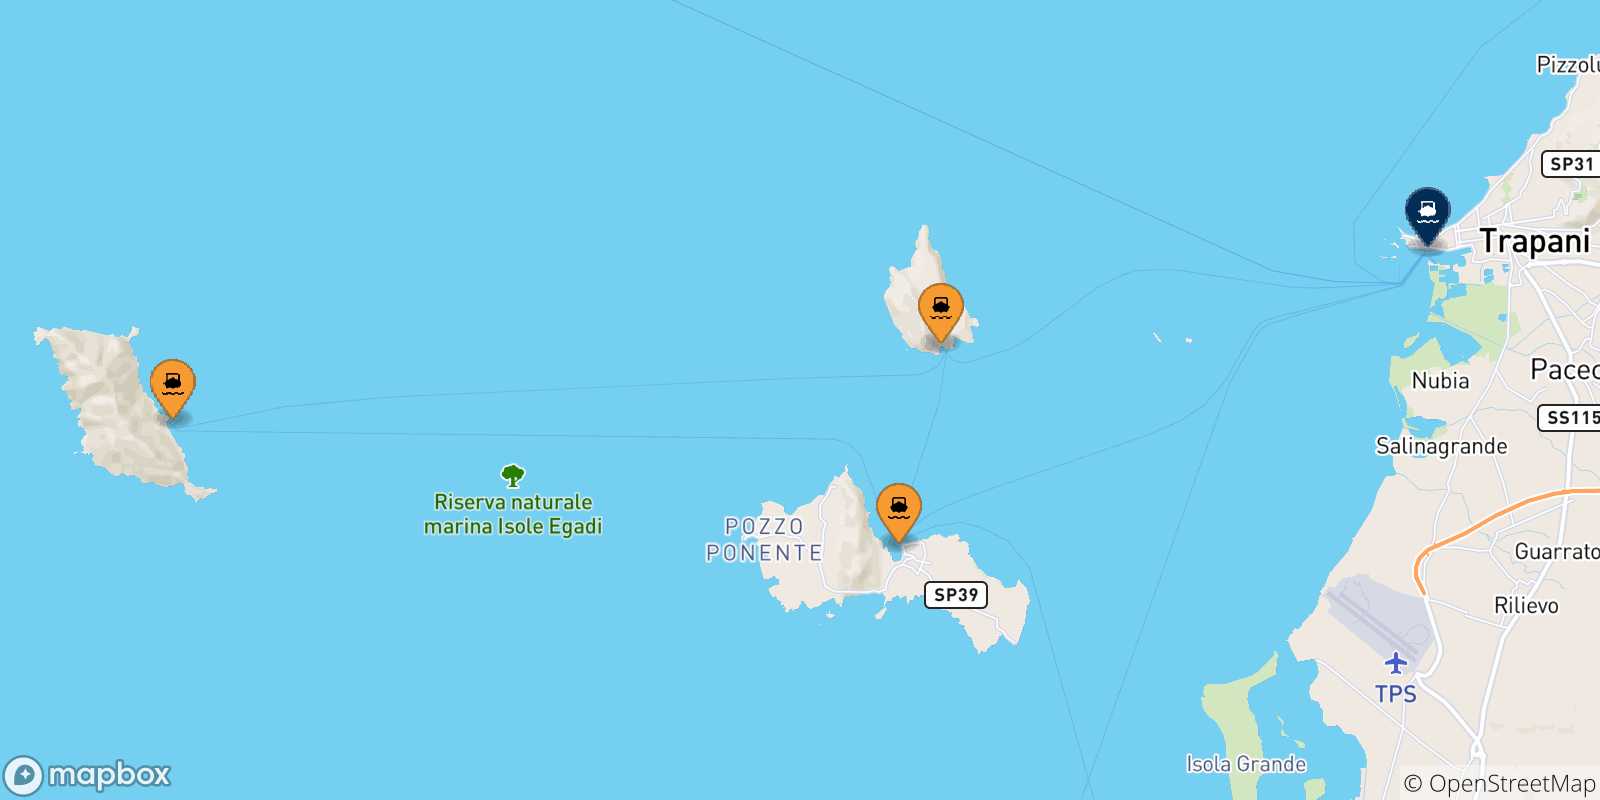 Mappa delle possibili rotte tra le Isole Egadi e la Sicilia